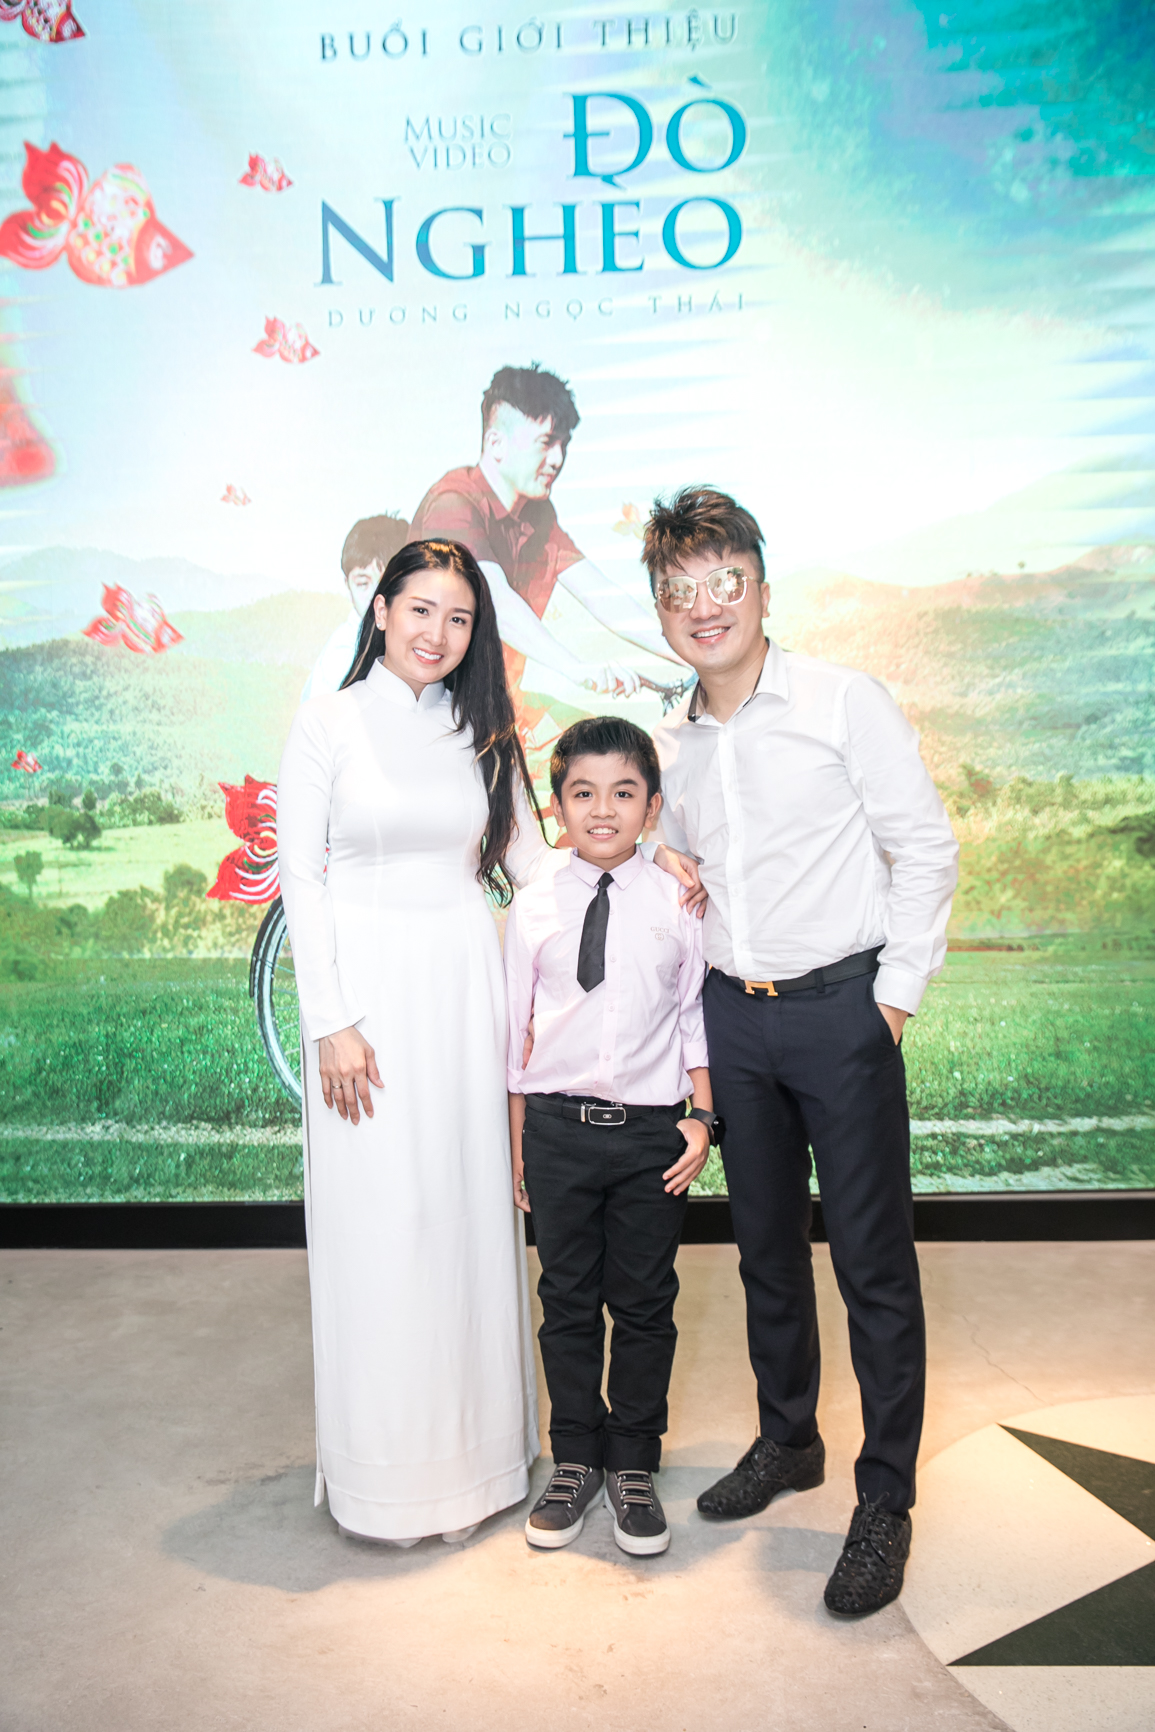 Dương Ngọc Thái và vợ khóc khi ra mắt MV 'Đò nghèo'